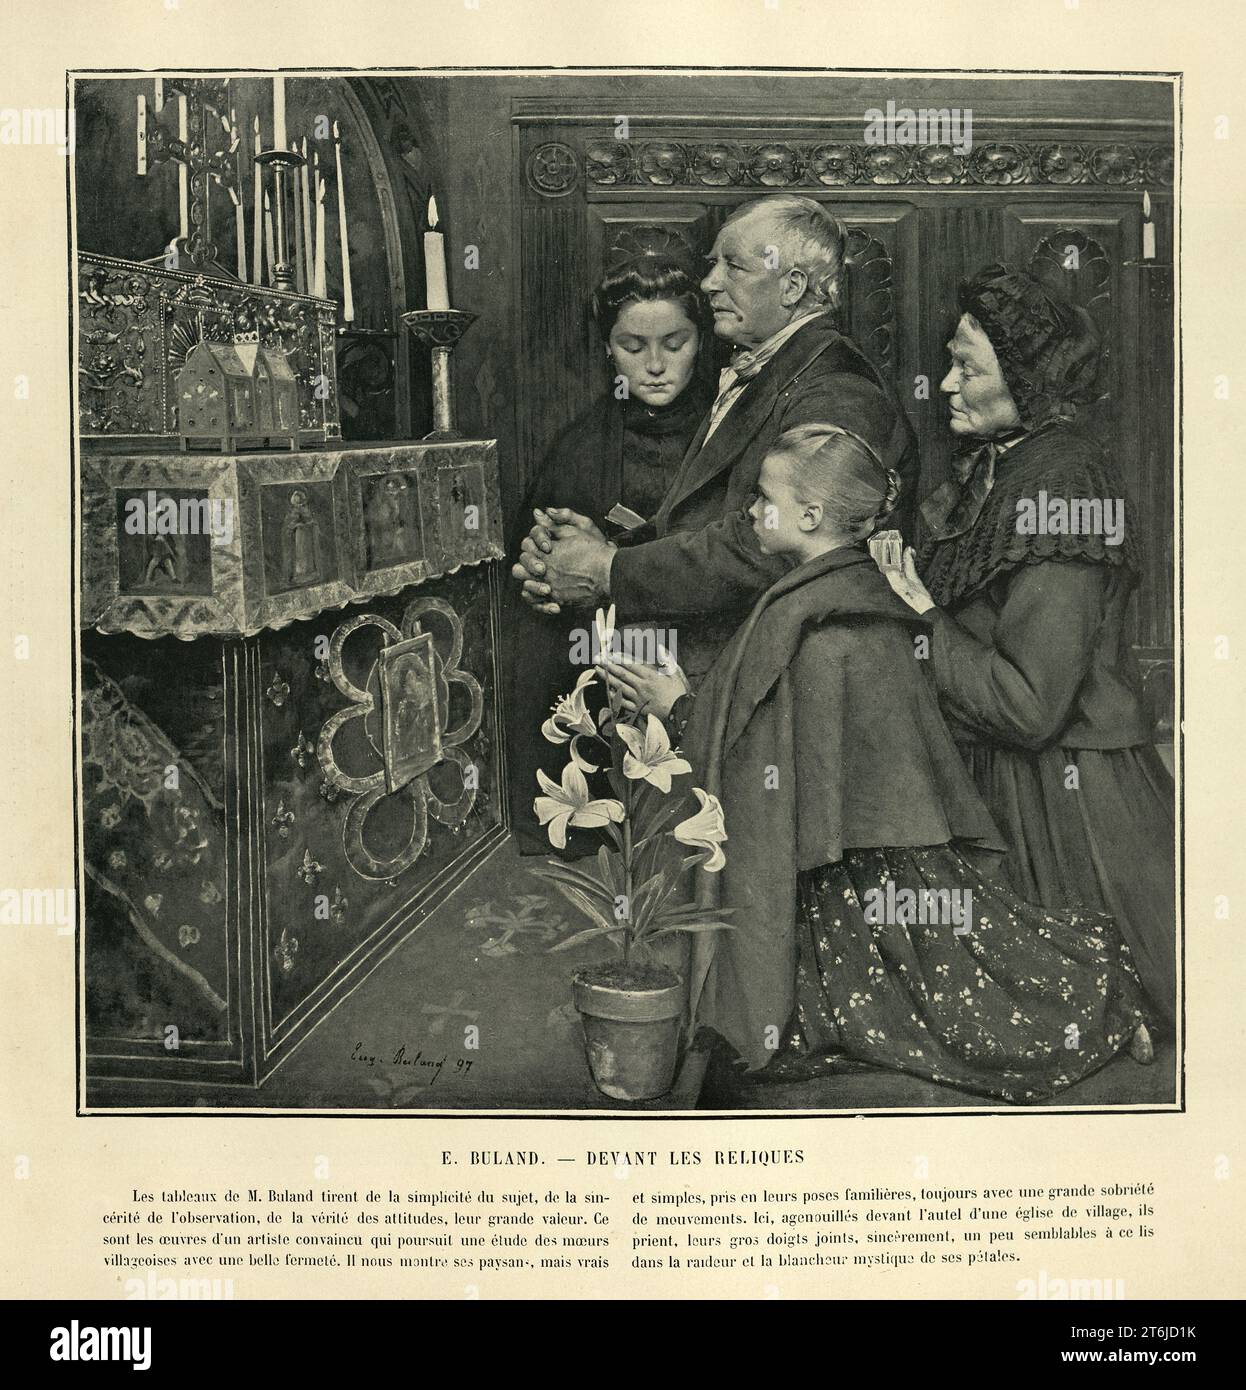 Eugène Buland, devant les reliques, famille priant devant les reliques, art français du 19e siècle Banque D'Images